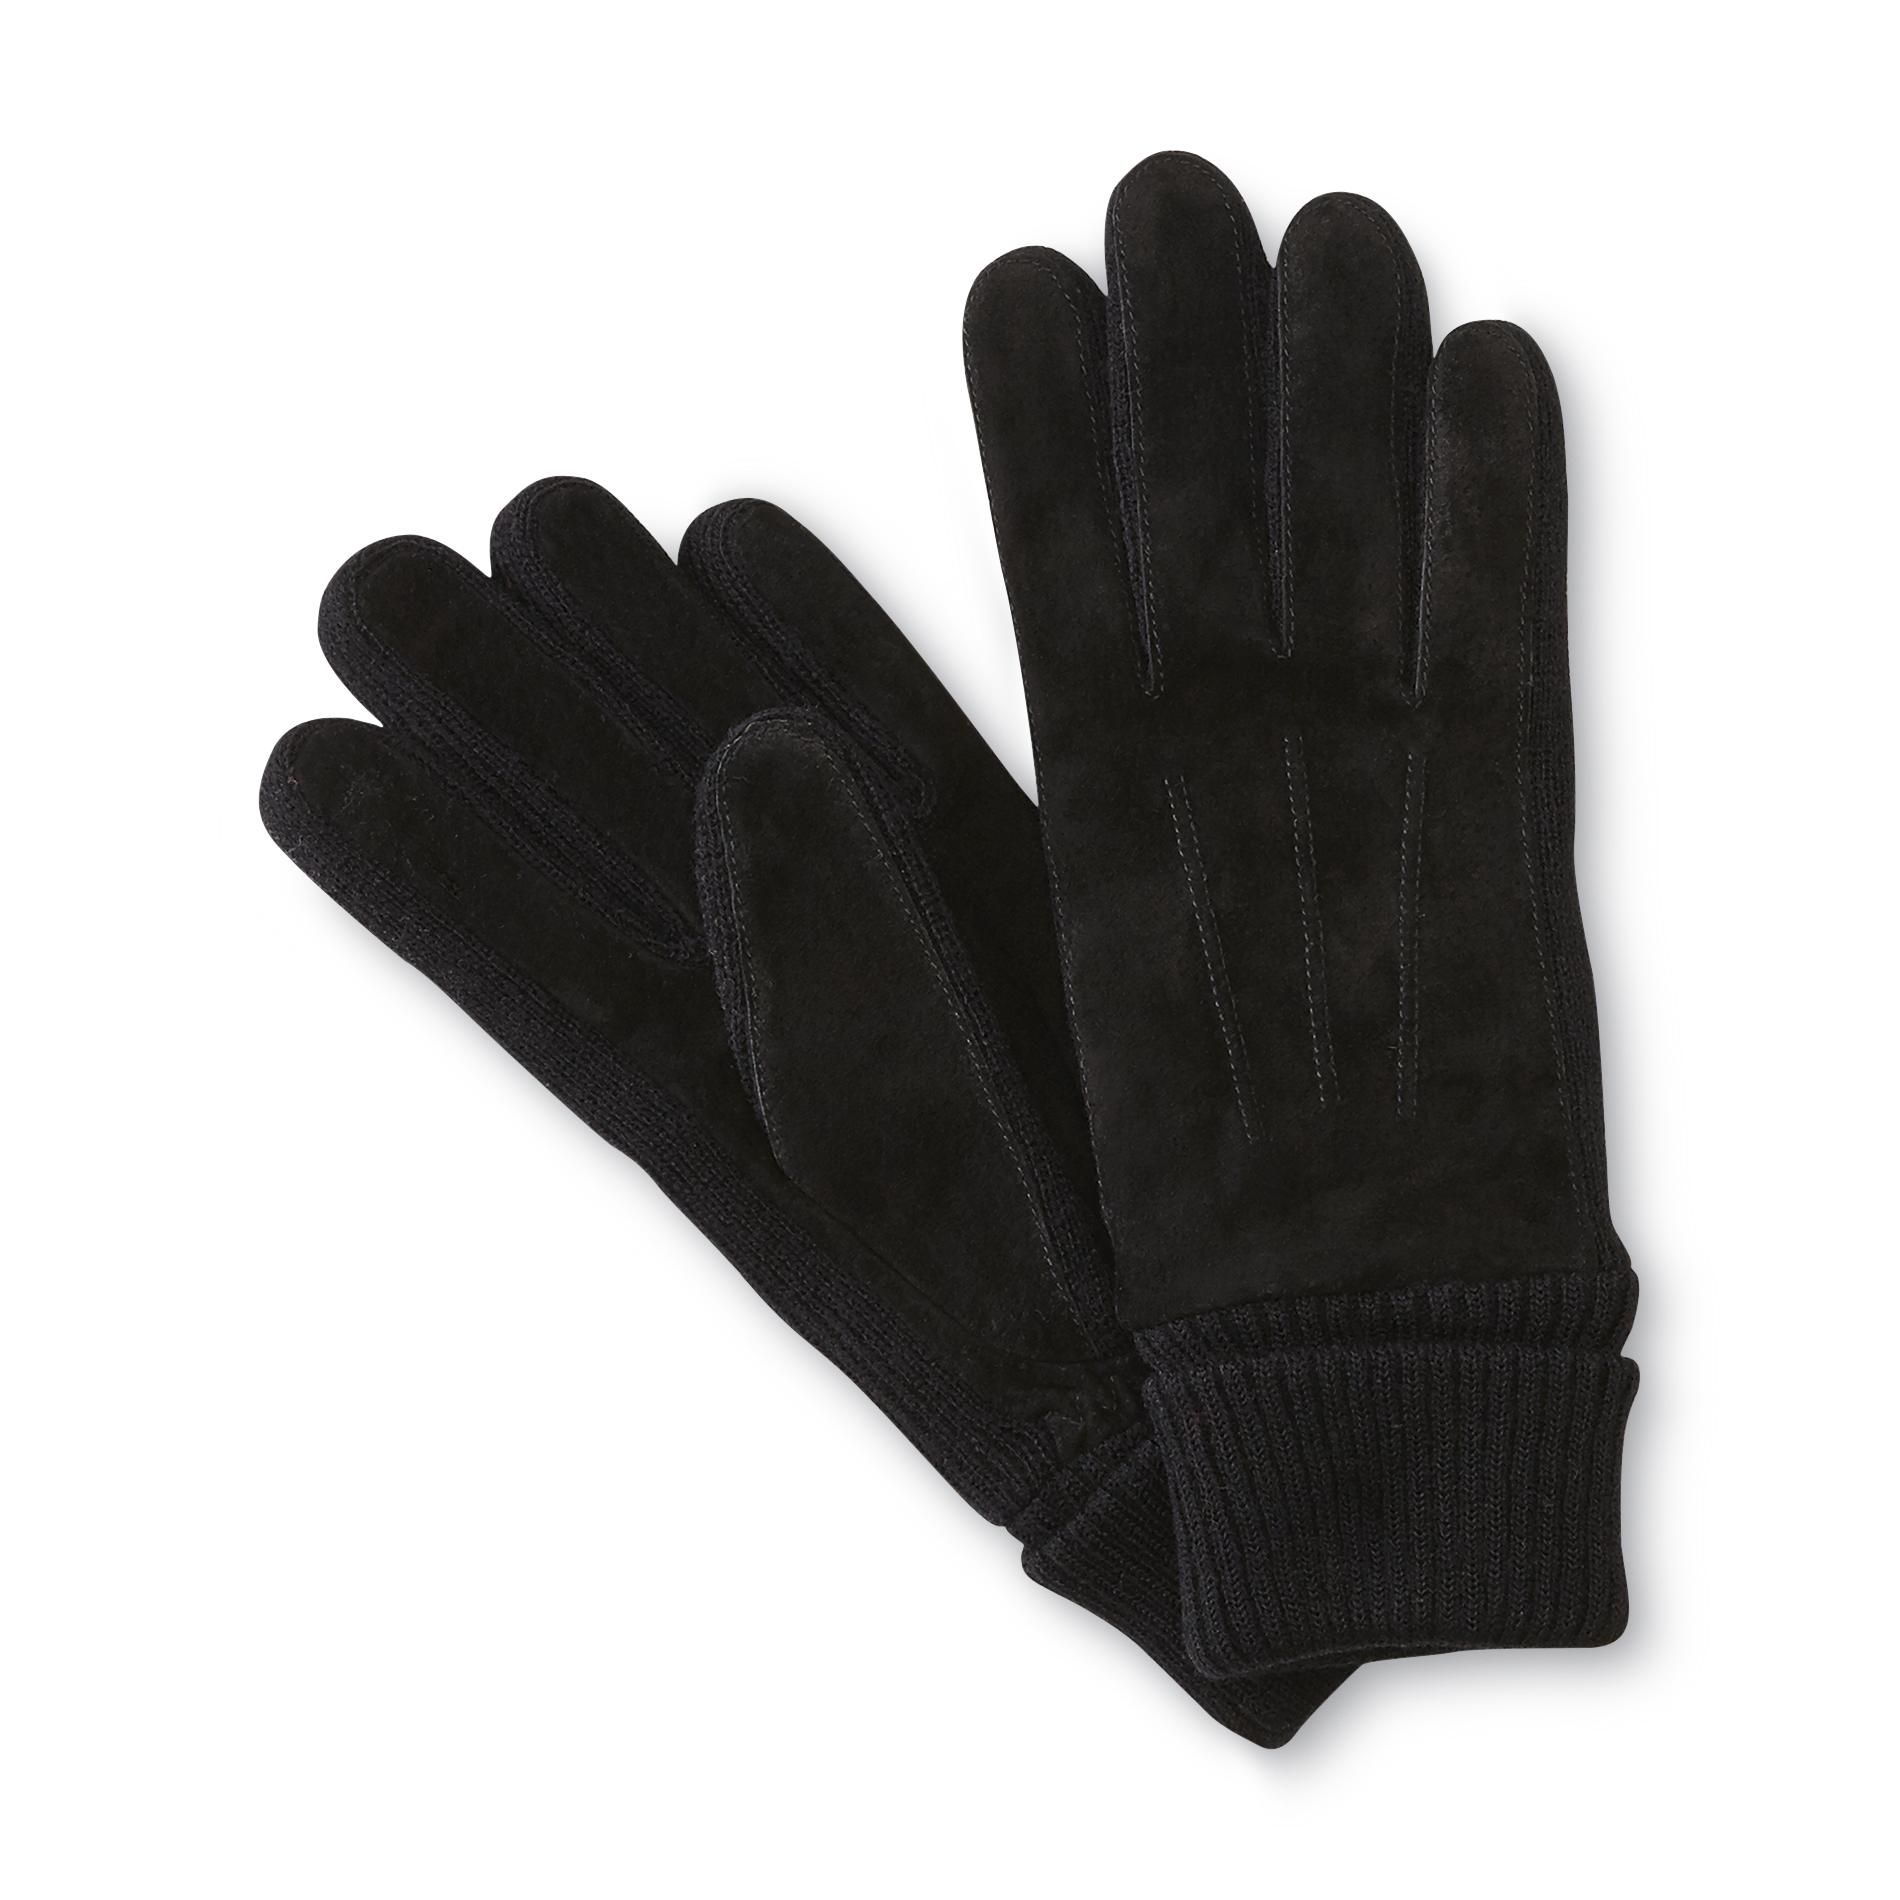 Jaclyn Smith Women's Commuter Gloves